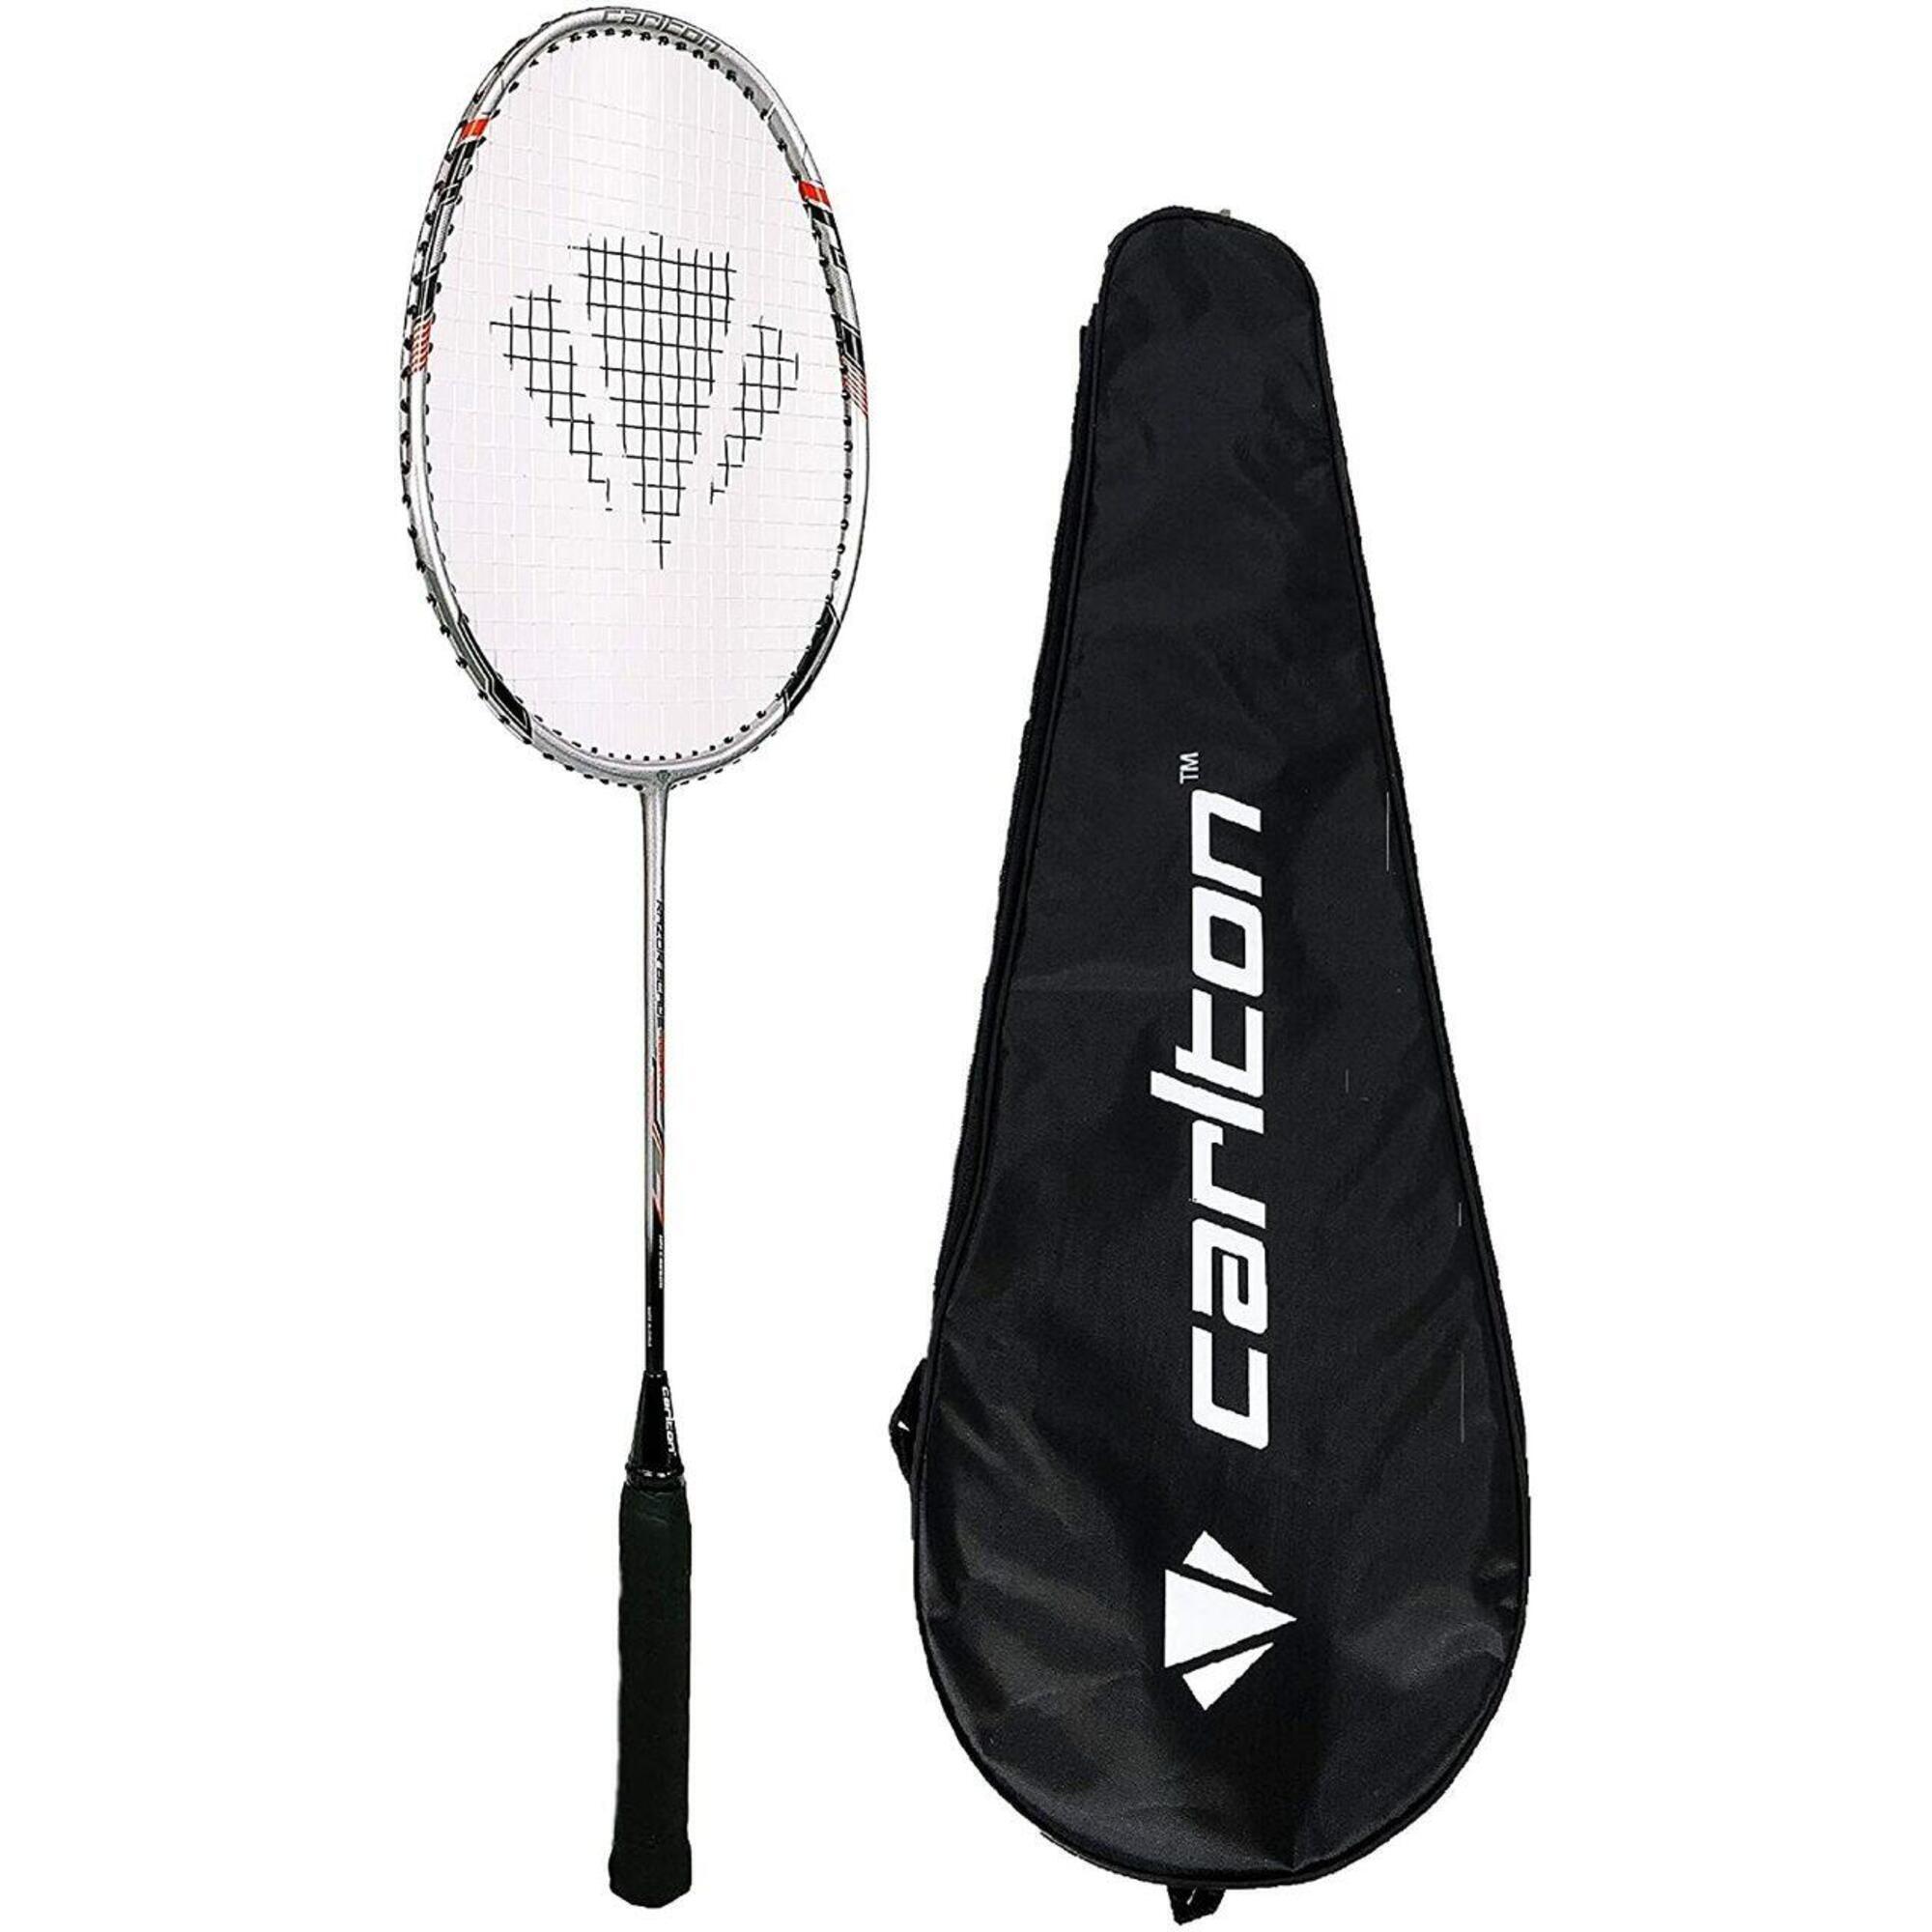 Carlton Razorblade Tour Badminton Racket & Cover 1/3